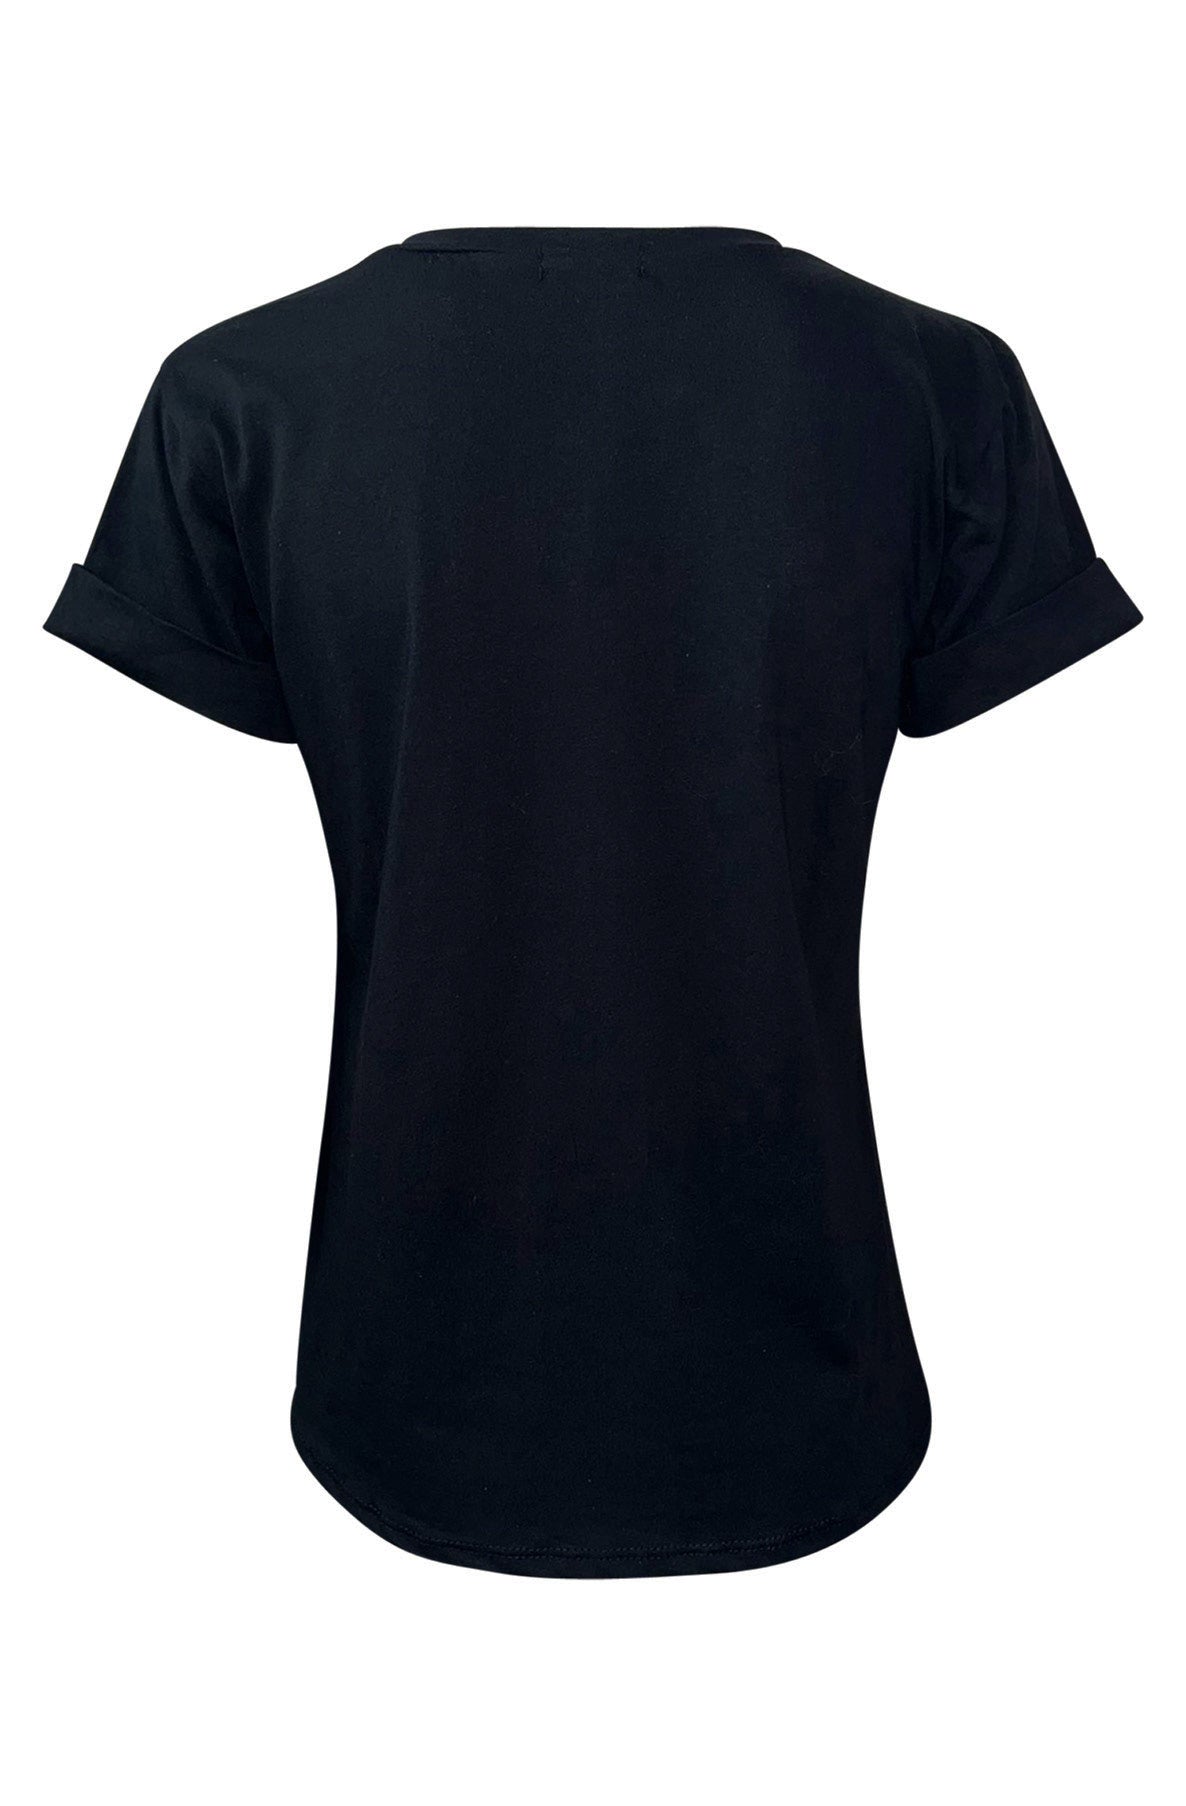 'Crème de la Crème' Slogan T-Shirt-Black